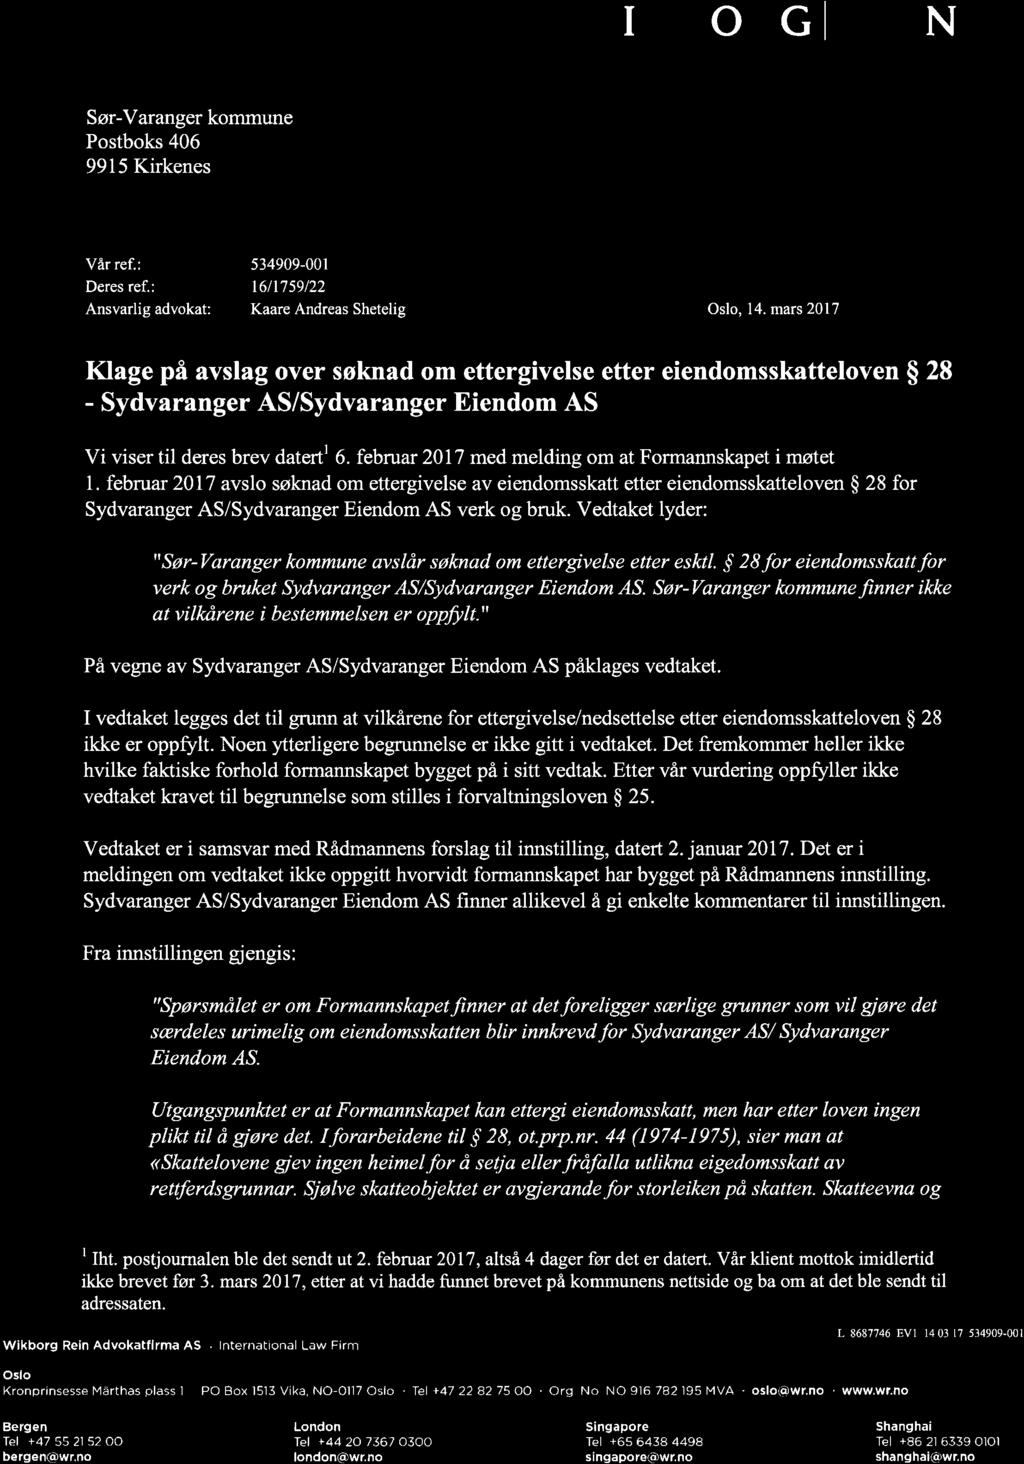 februar 2017 medmelding om at Formannskapet imøtet 1. februar 2017 avslo søknad om ettergivelse av eiendomsskatt etter eiendomsskatteloven $ 28 for Sydvaranger AS/Sydvaranger Eiendom AS verk og bruk.